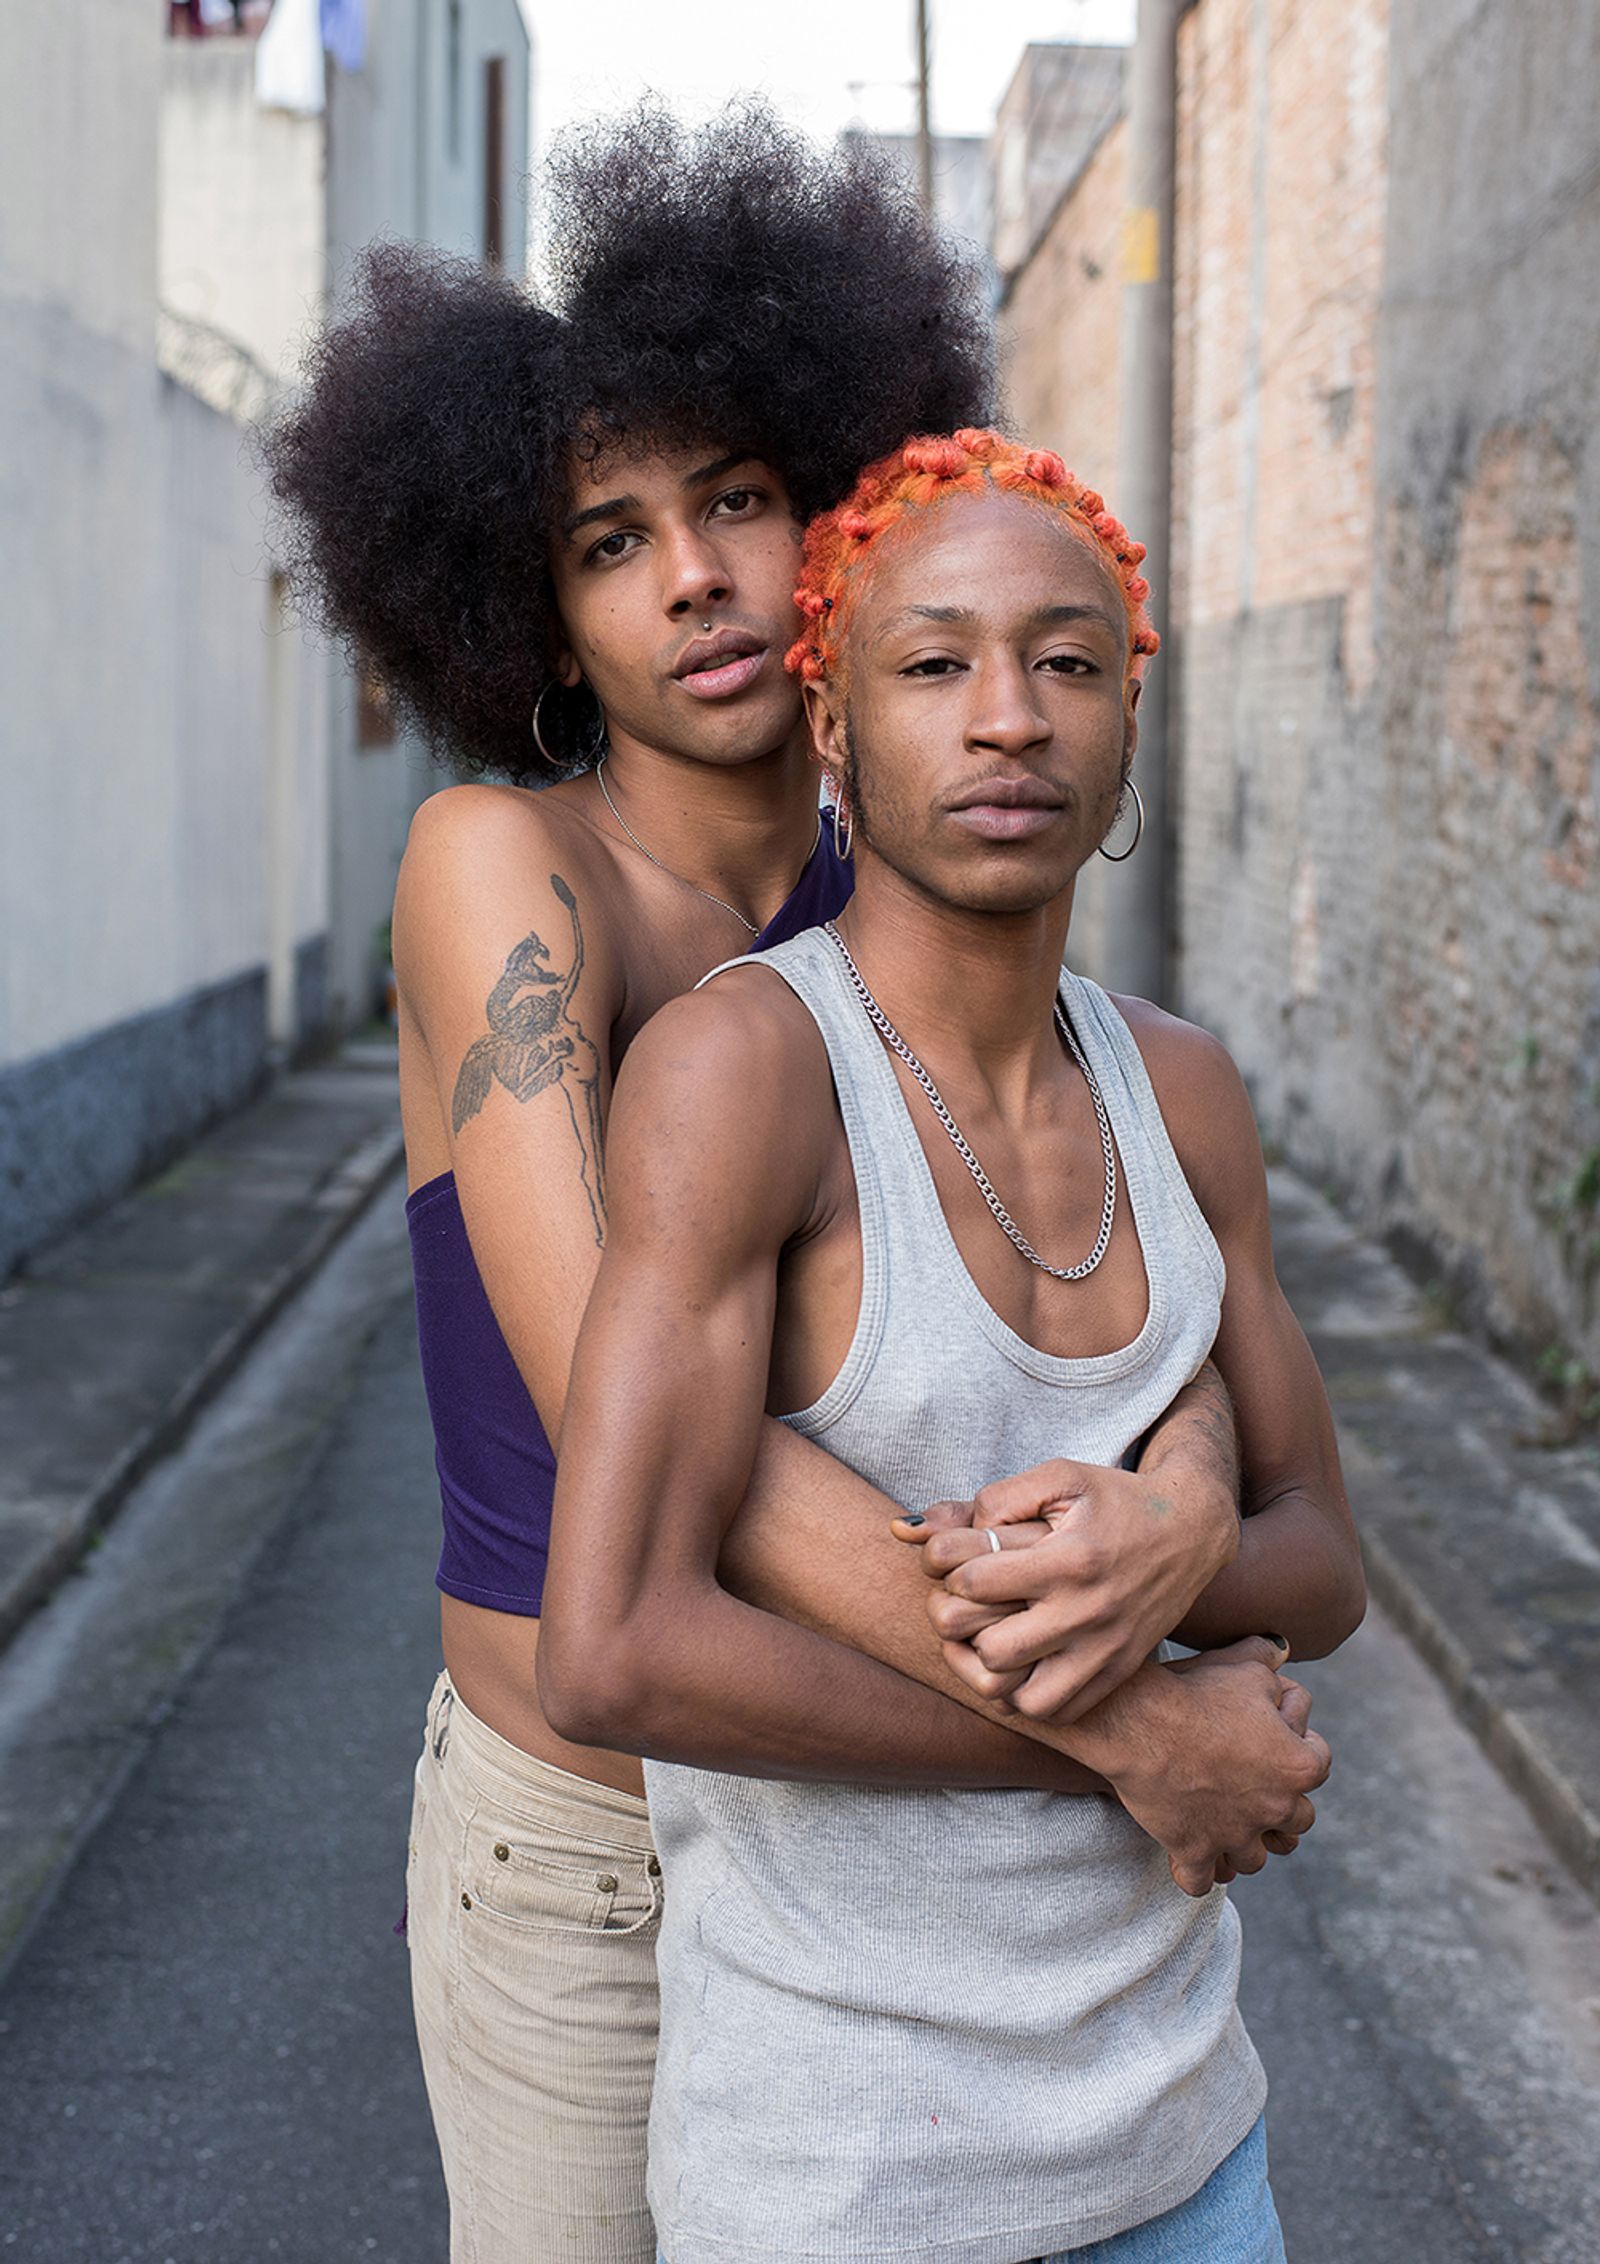 © Camila Falcão - Cunanny and Trindade, a trans-centered couple, pose hugging